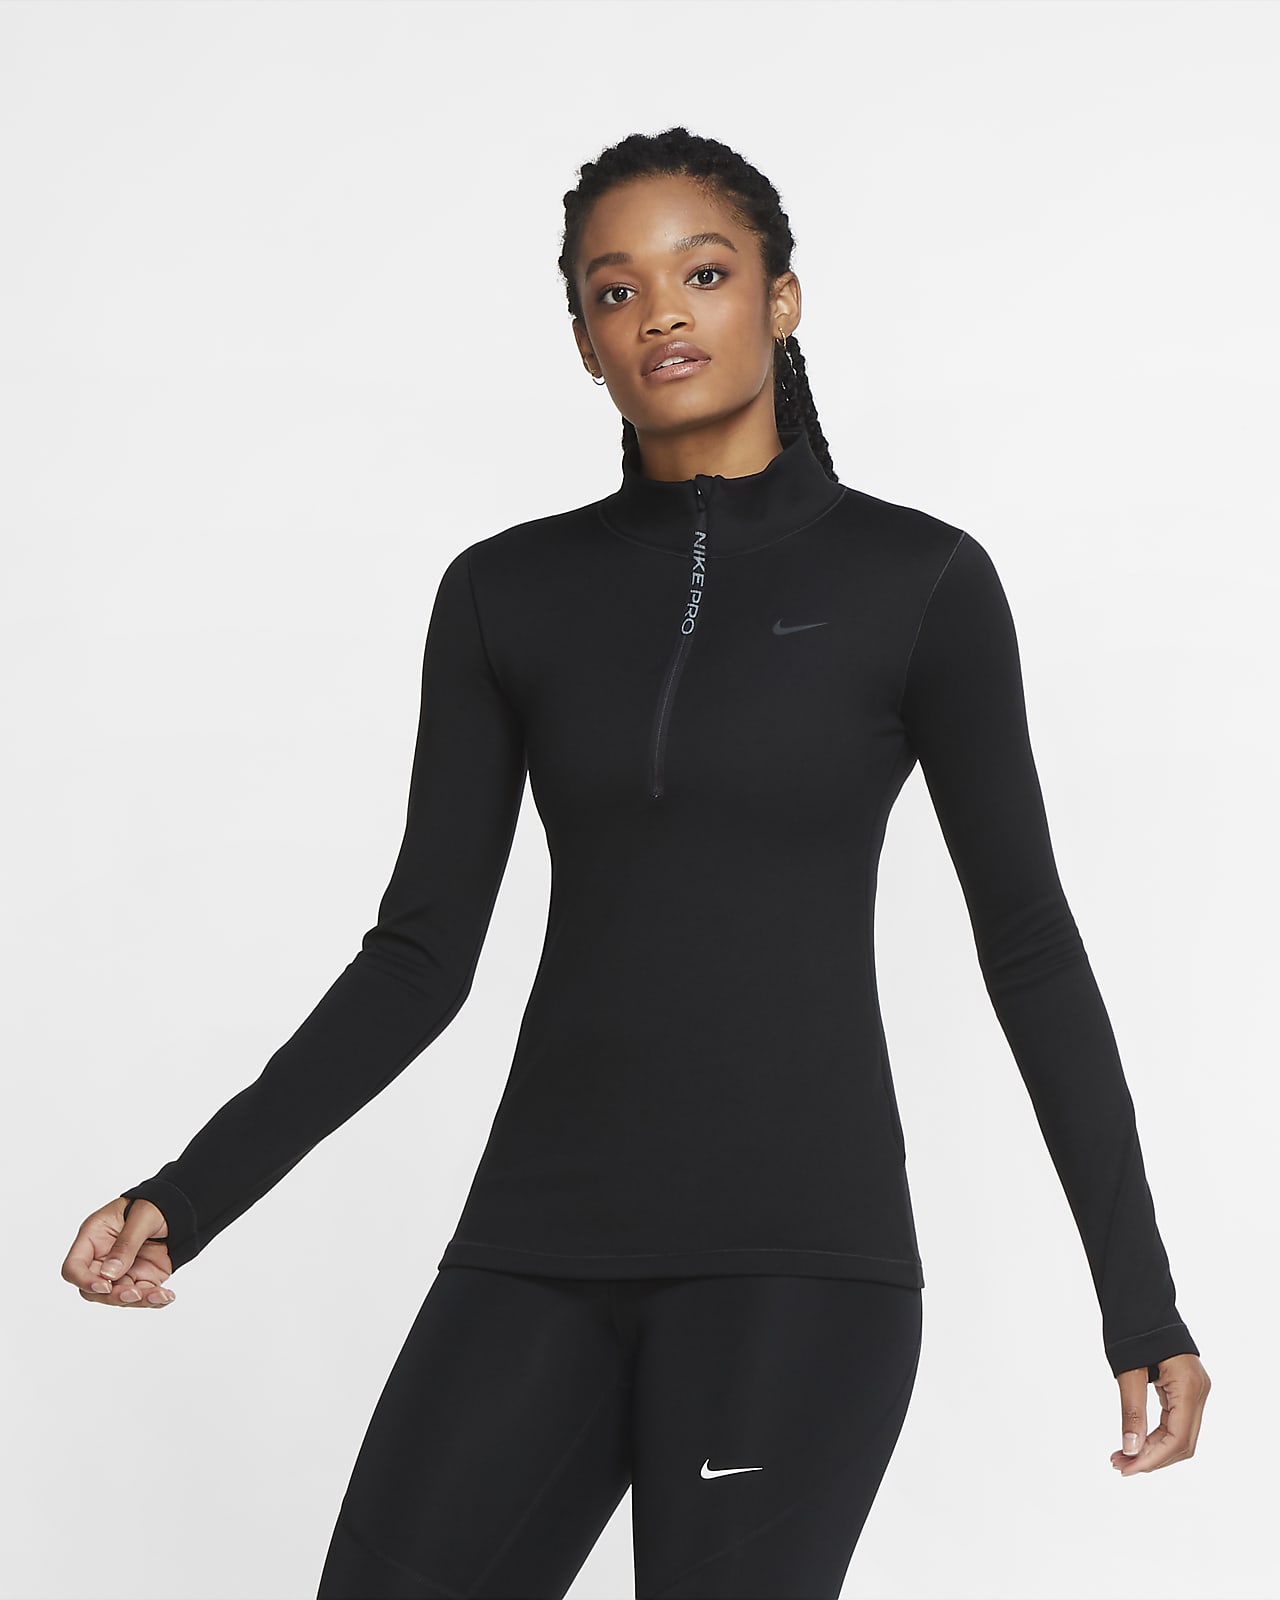 🔥NWT MSRP $75🔥 Nike Pro Hyperwarm Women's Built in Short 933305